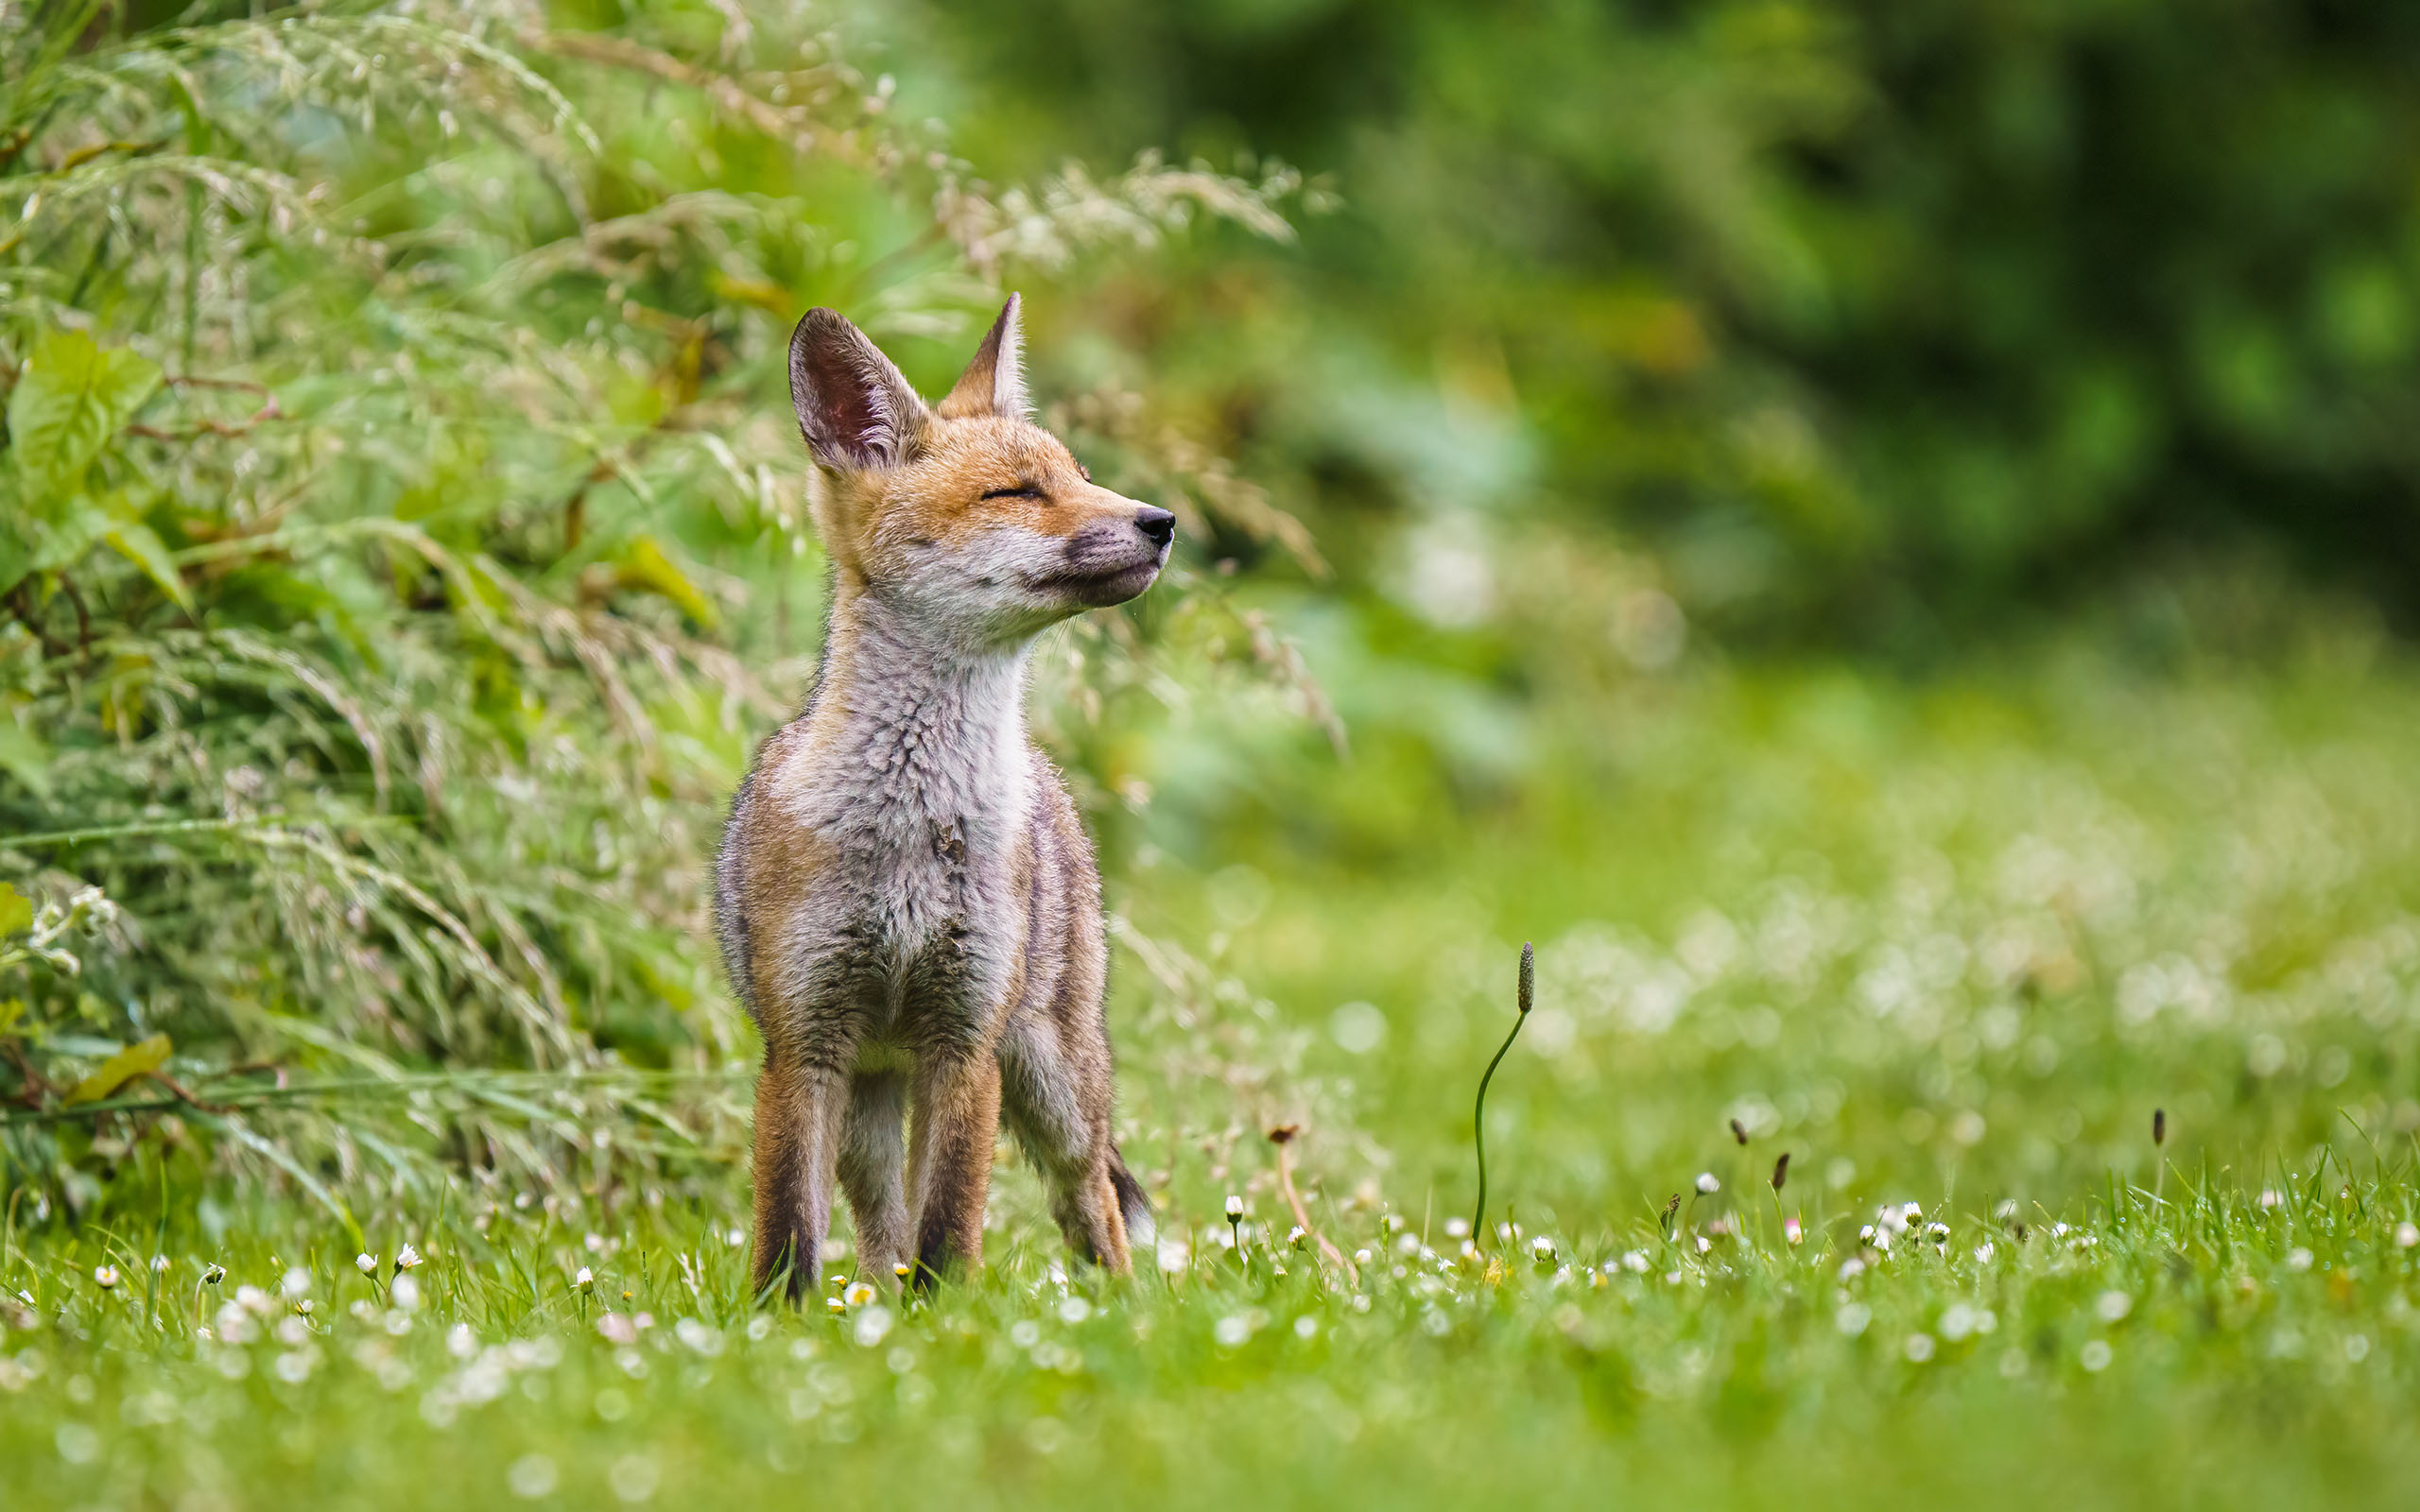 03 – Wildlife (Fox)